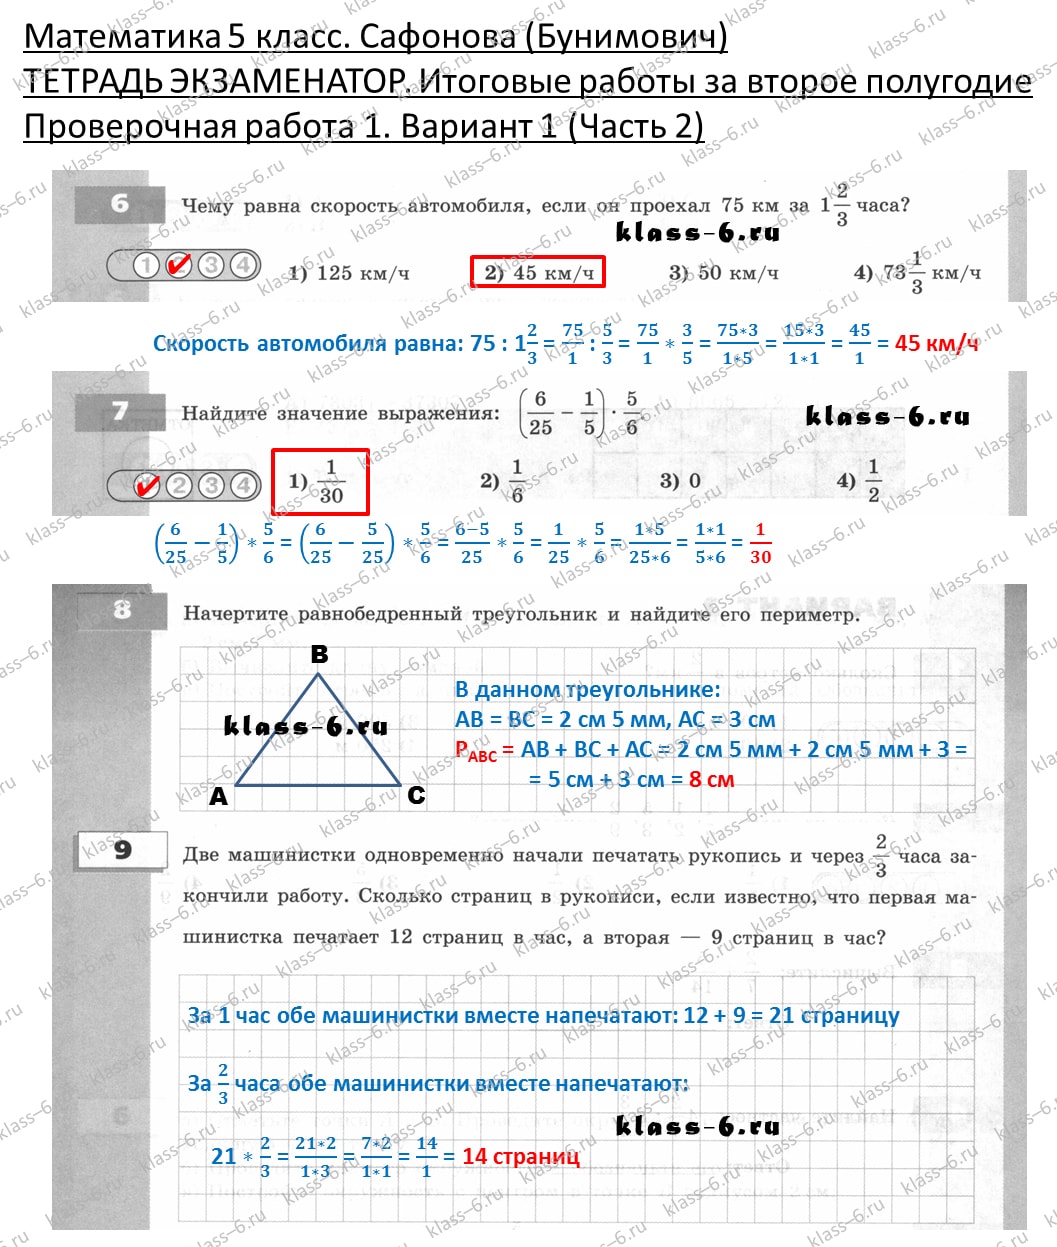 решебник и гдз по математике тетрадь экзаменатор Сафонова, Бунимович 5 класс 2 полугодие, контрольная работа 1 вариант 1 (2)